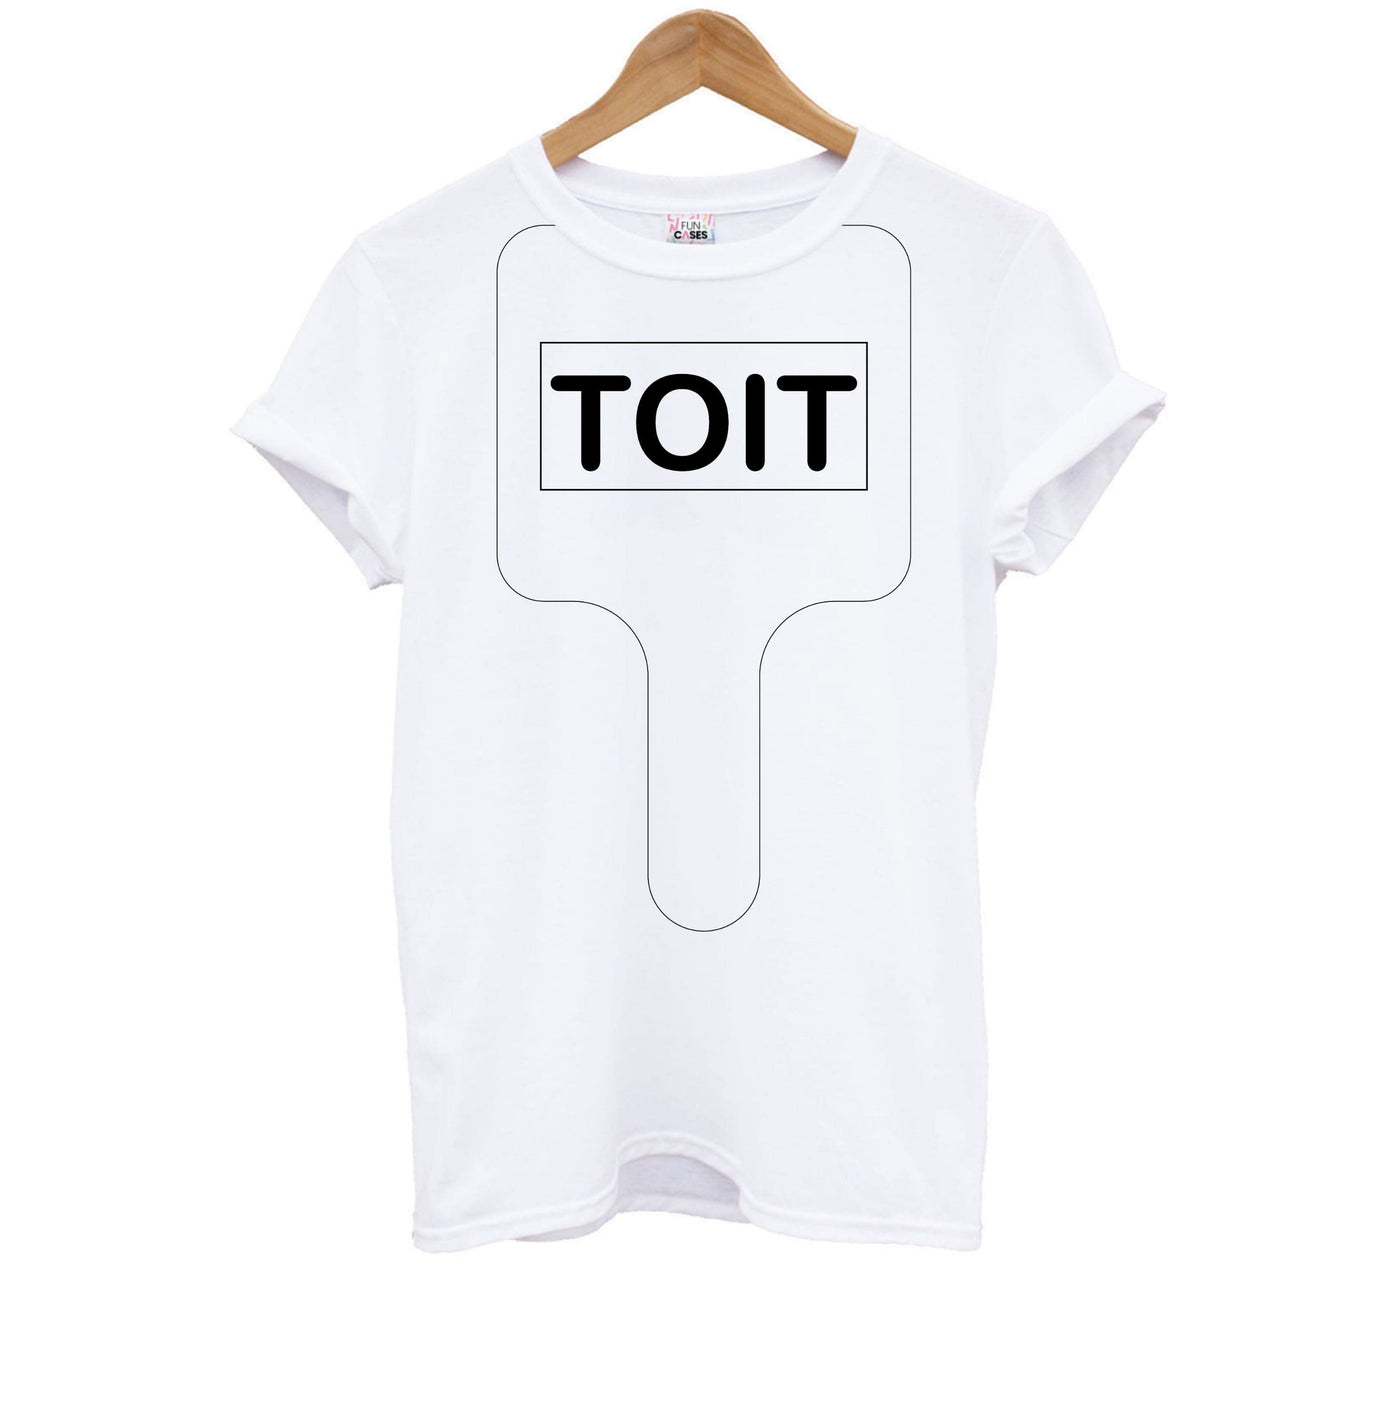 Toit - Brooklyn Nine-Nine Kids T-Shirt